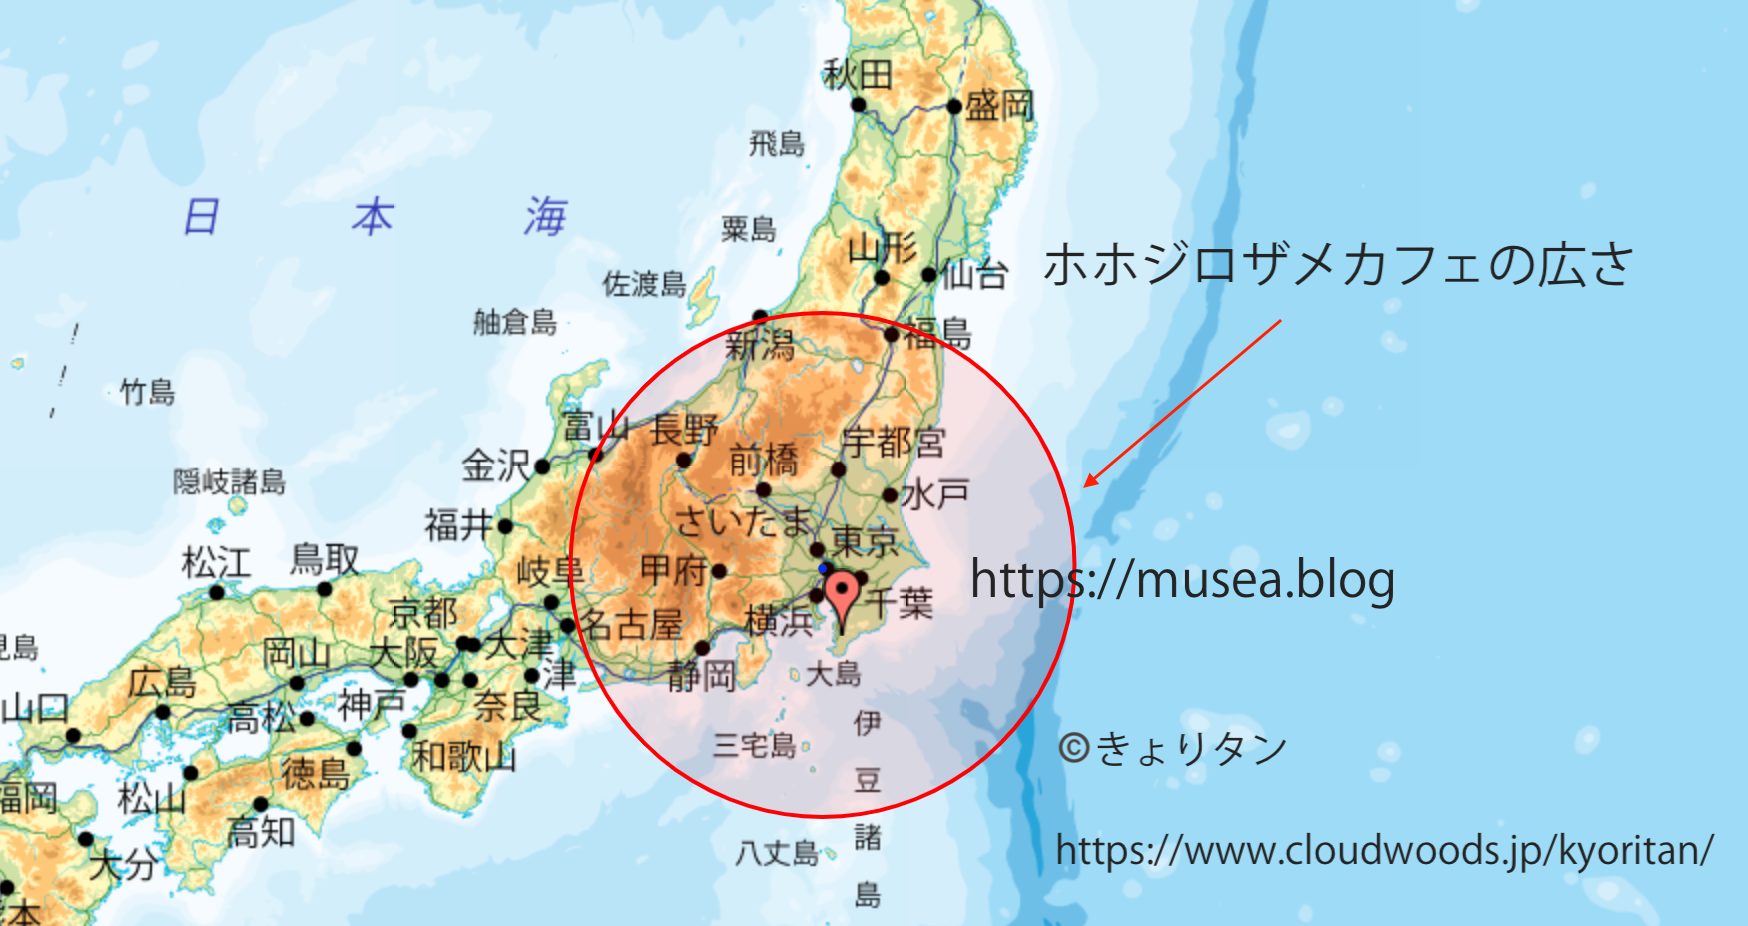 ホホジロザメ・カフェの広さを日本で表したら？